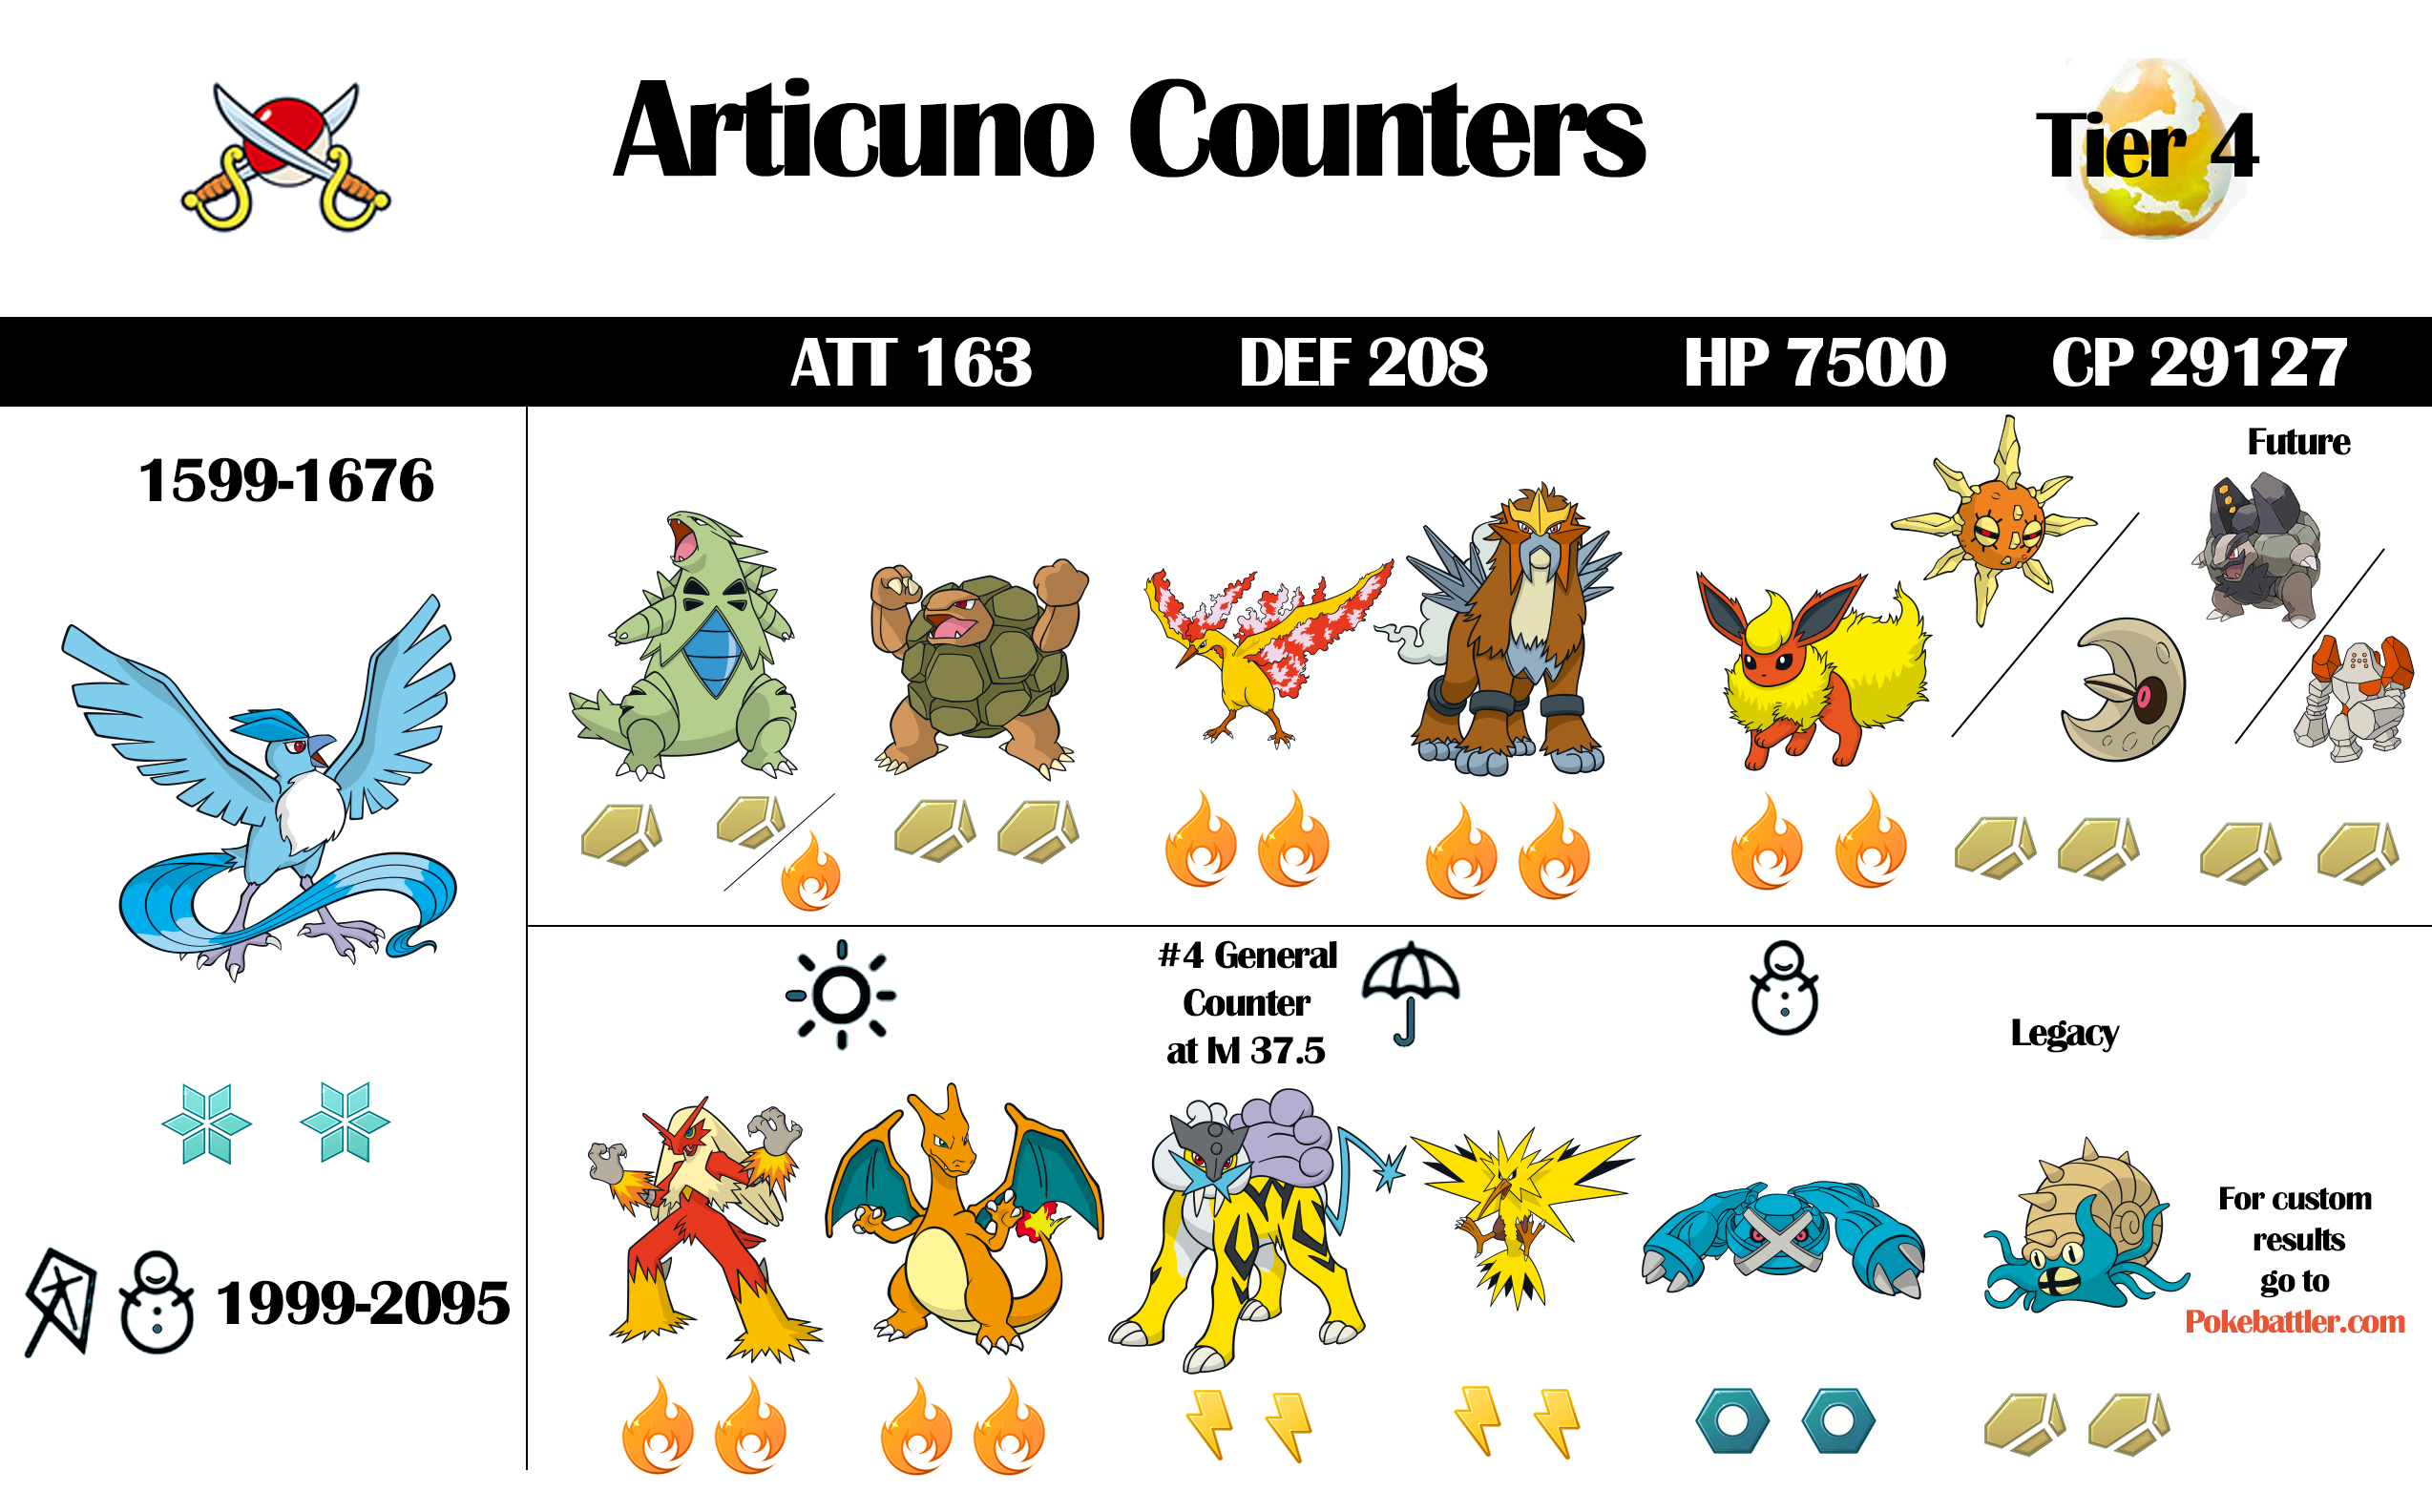 Pokemon GO: Articuno Raid Counters Guide